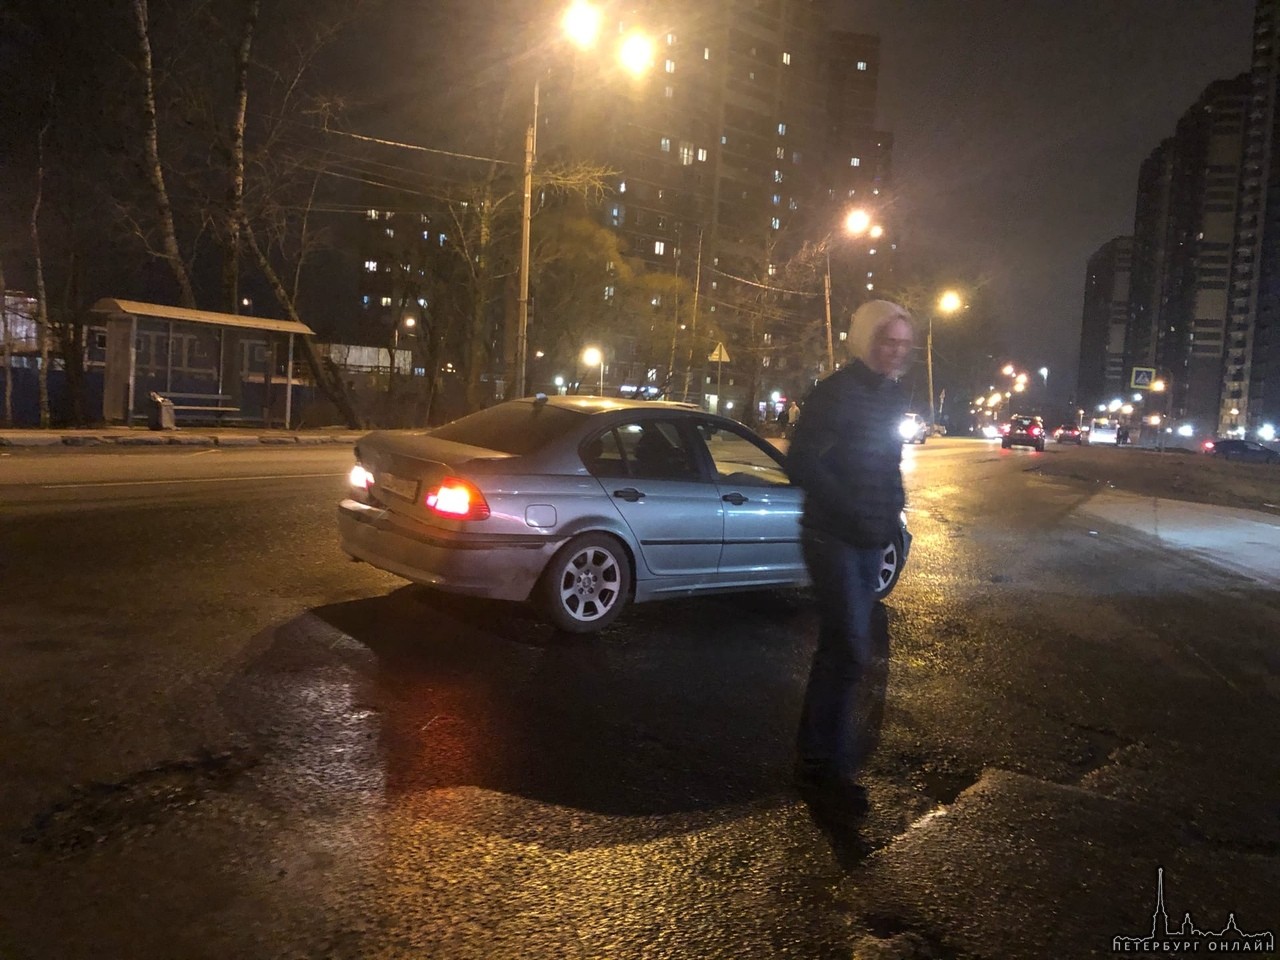 Ищем свидетелей и видео аварии 7 марта в 21:25, которая произошла в районе Усть-Славянки (у ЖК «Живи...